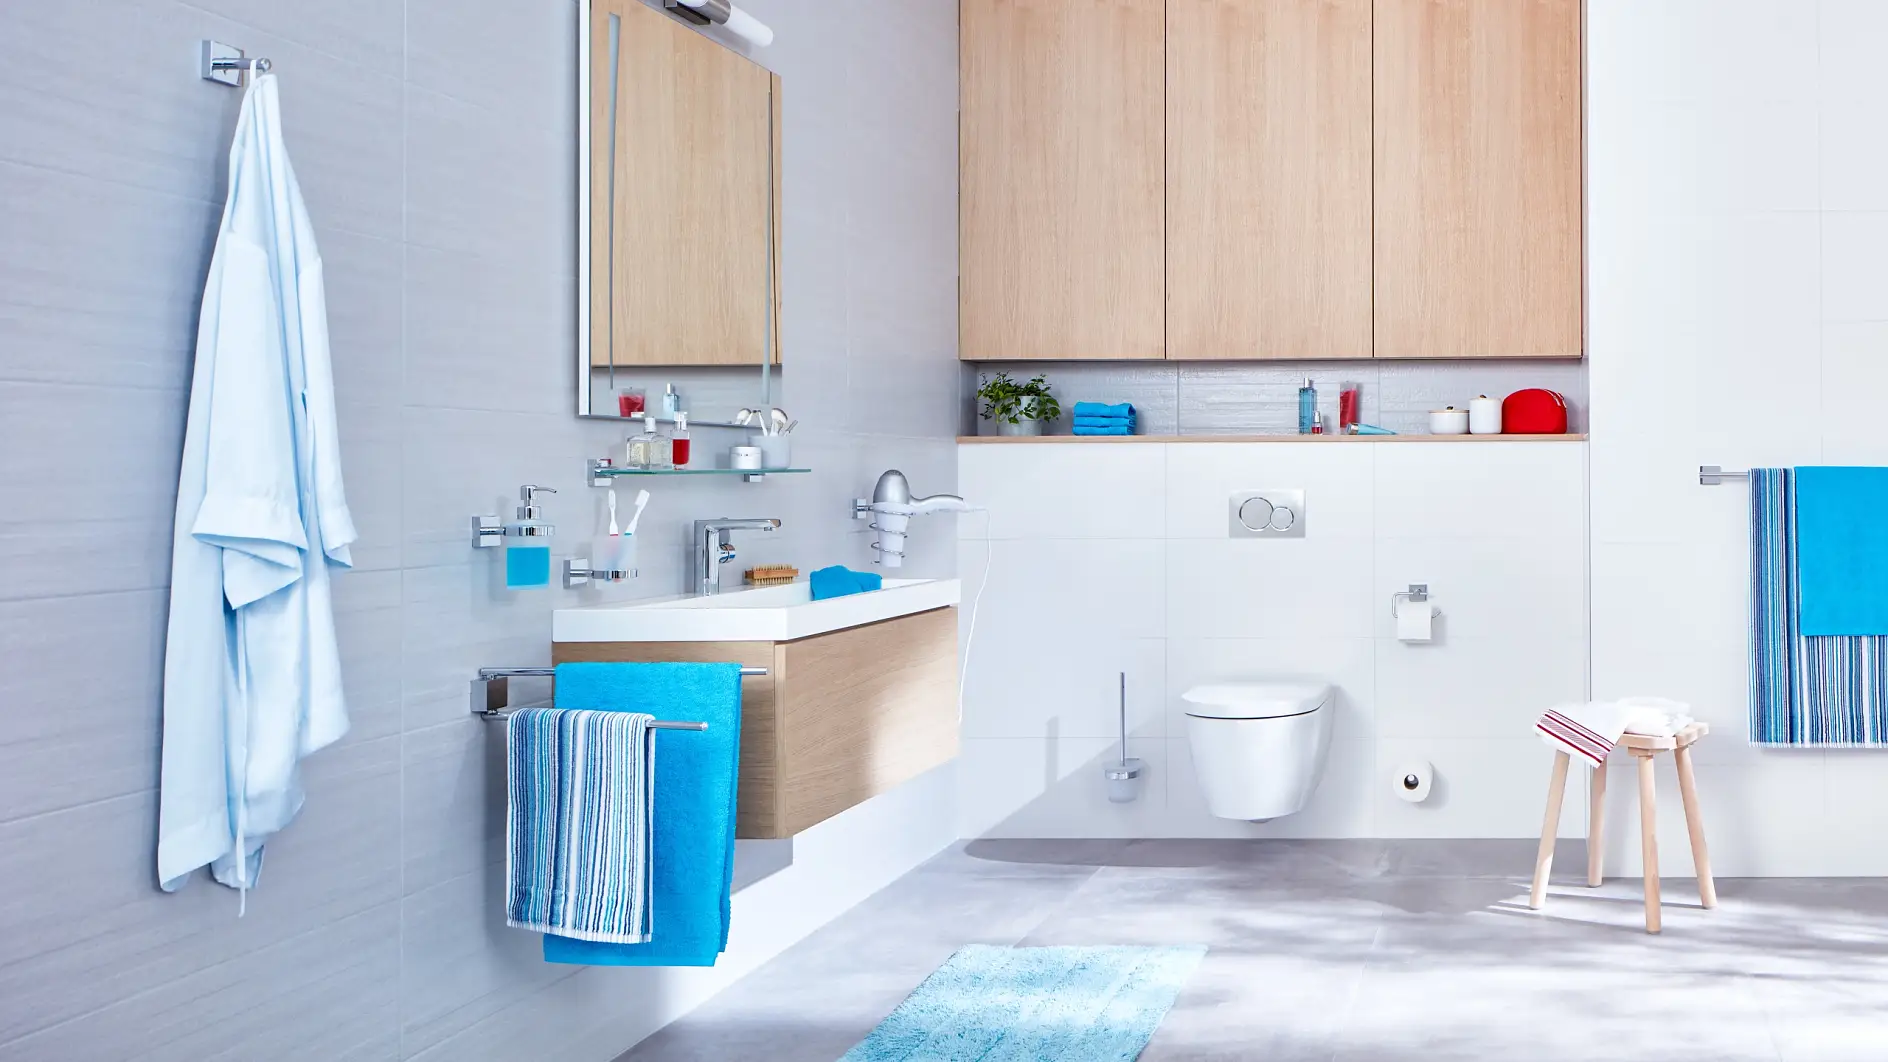 Diseño claro y estructuras rectas para una experiencia de baño organizada.